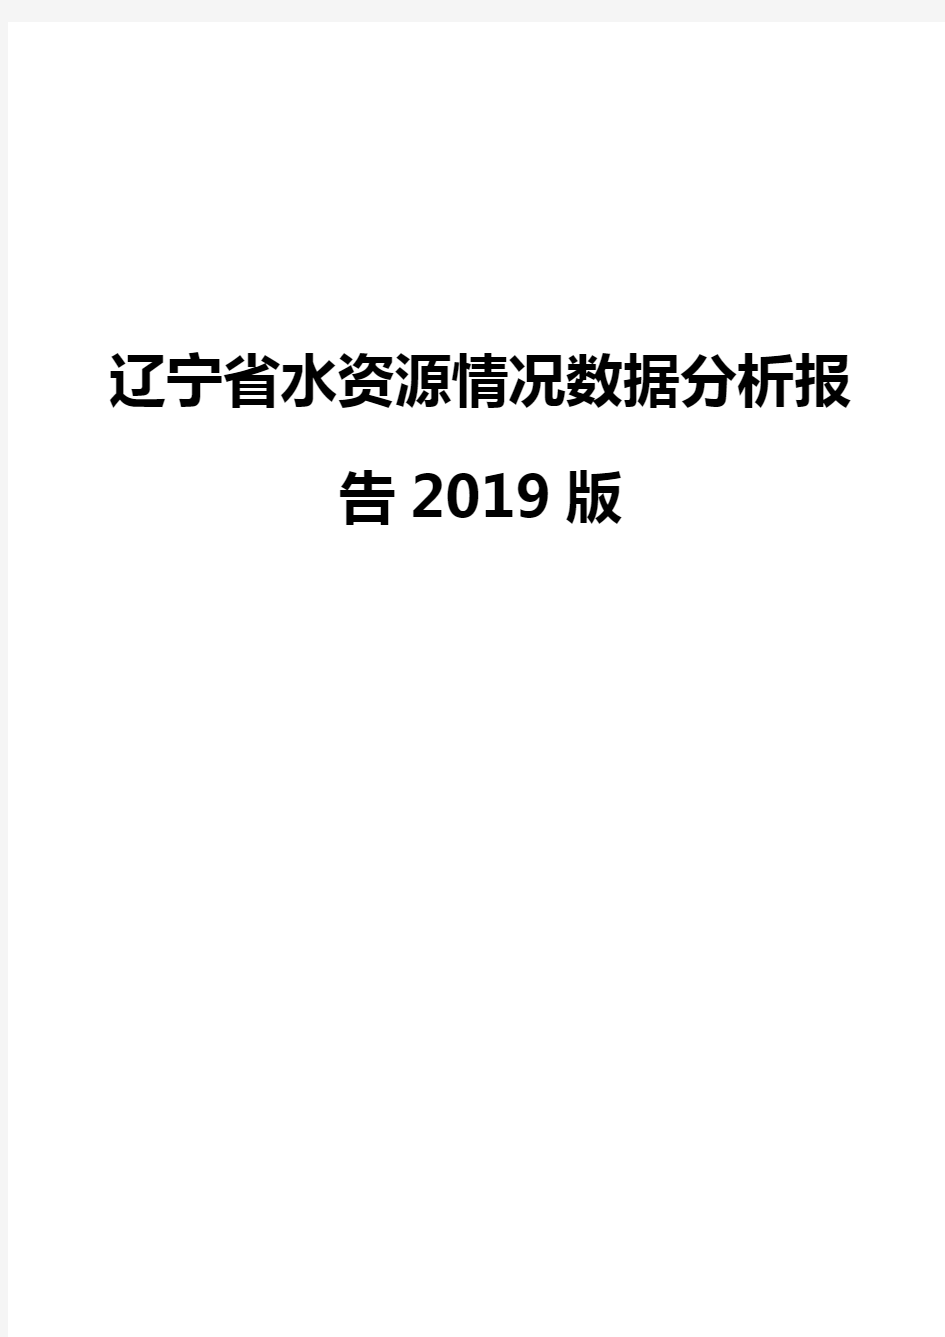 辽宁省水资源情况数据分析报告2019版